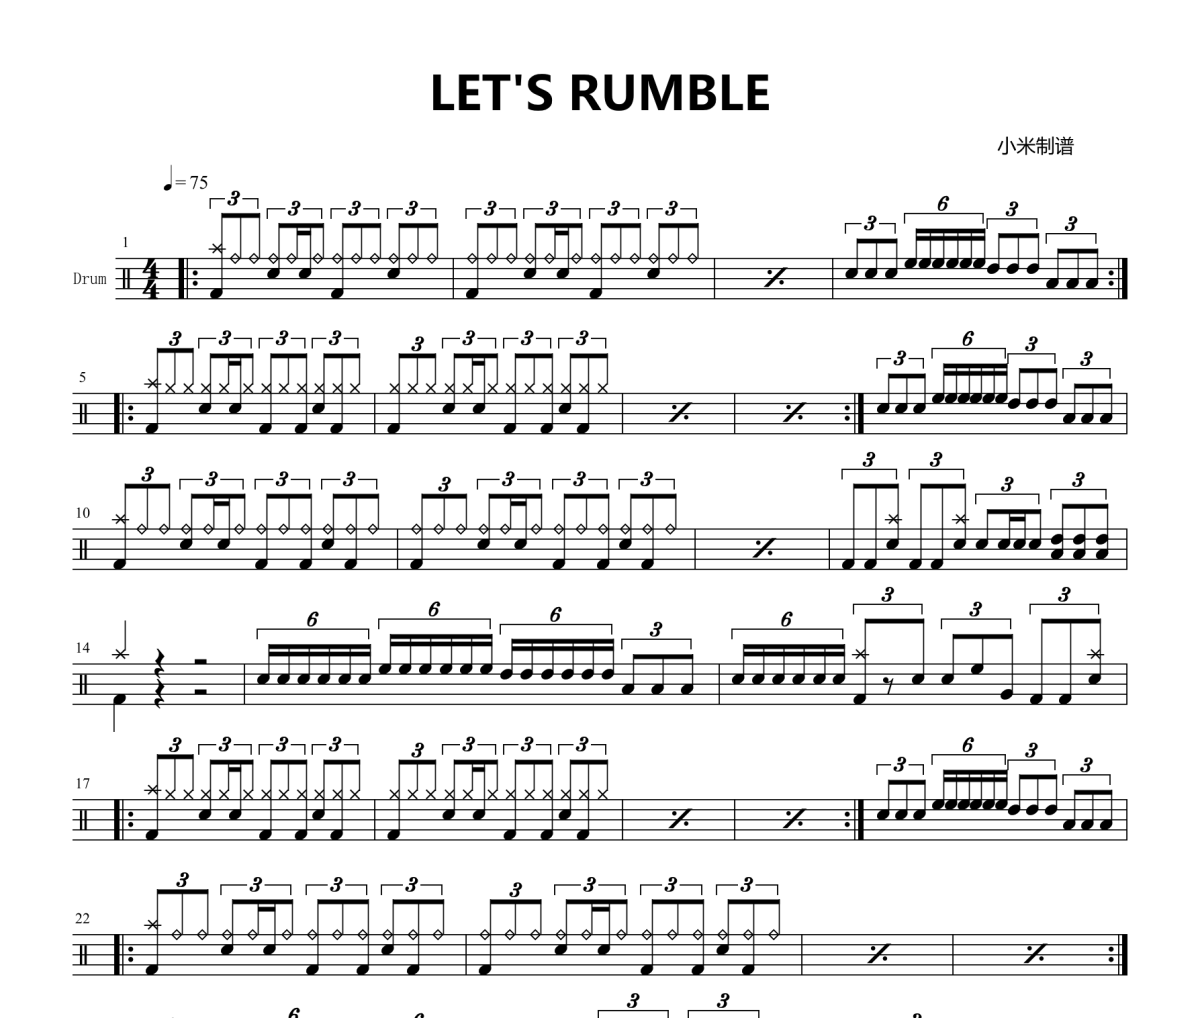 LET'S RUMBLE鼓谱 比赛歌曲《LET'S RUMBLE》架子鼓|爵士鼓|鼓谱+动态视频